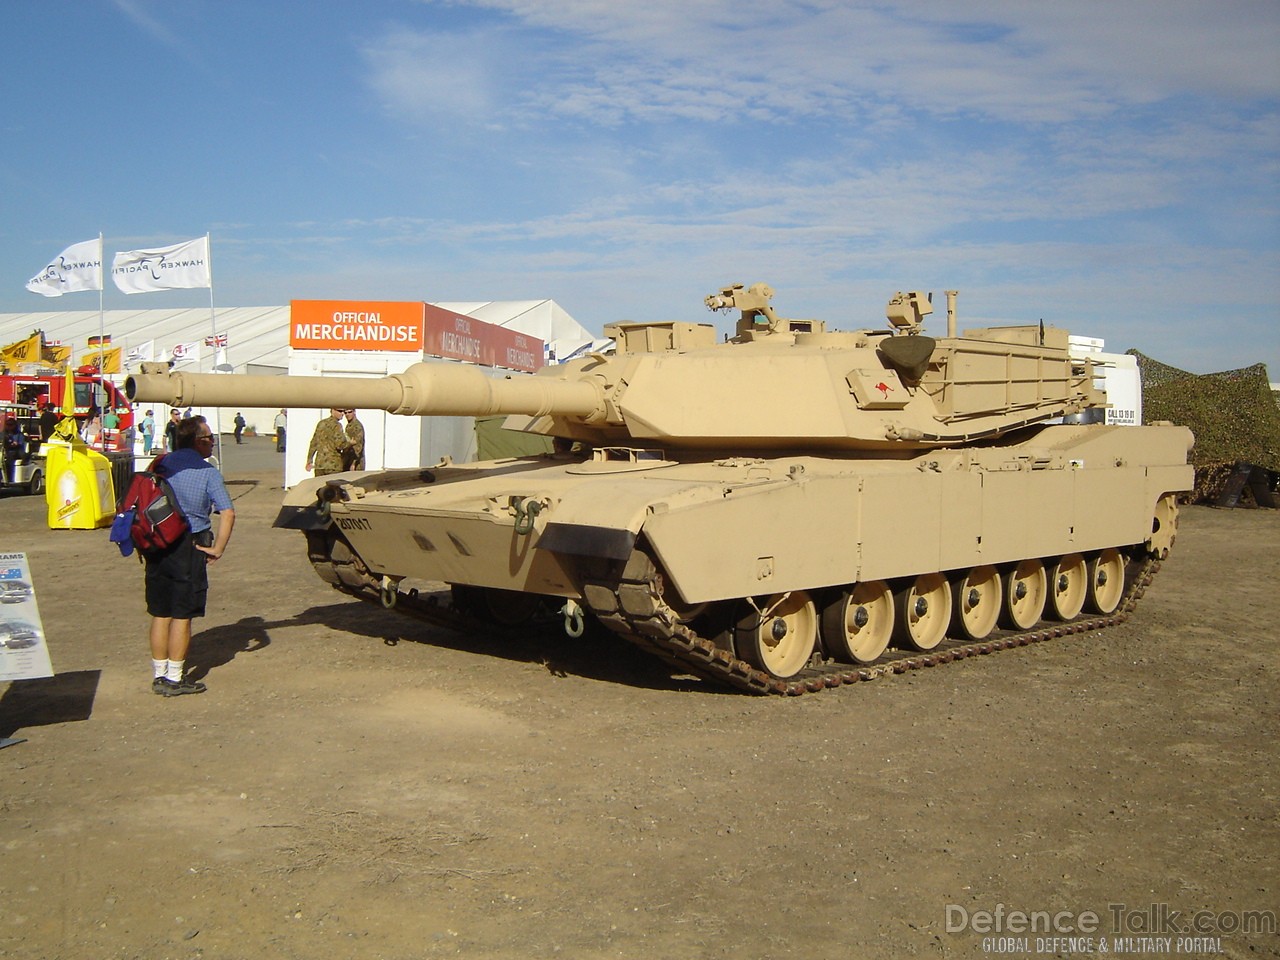 M1A1 AIM SA tank - Avalon